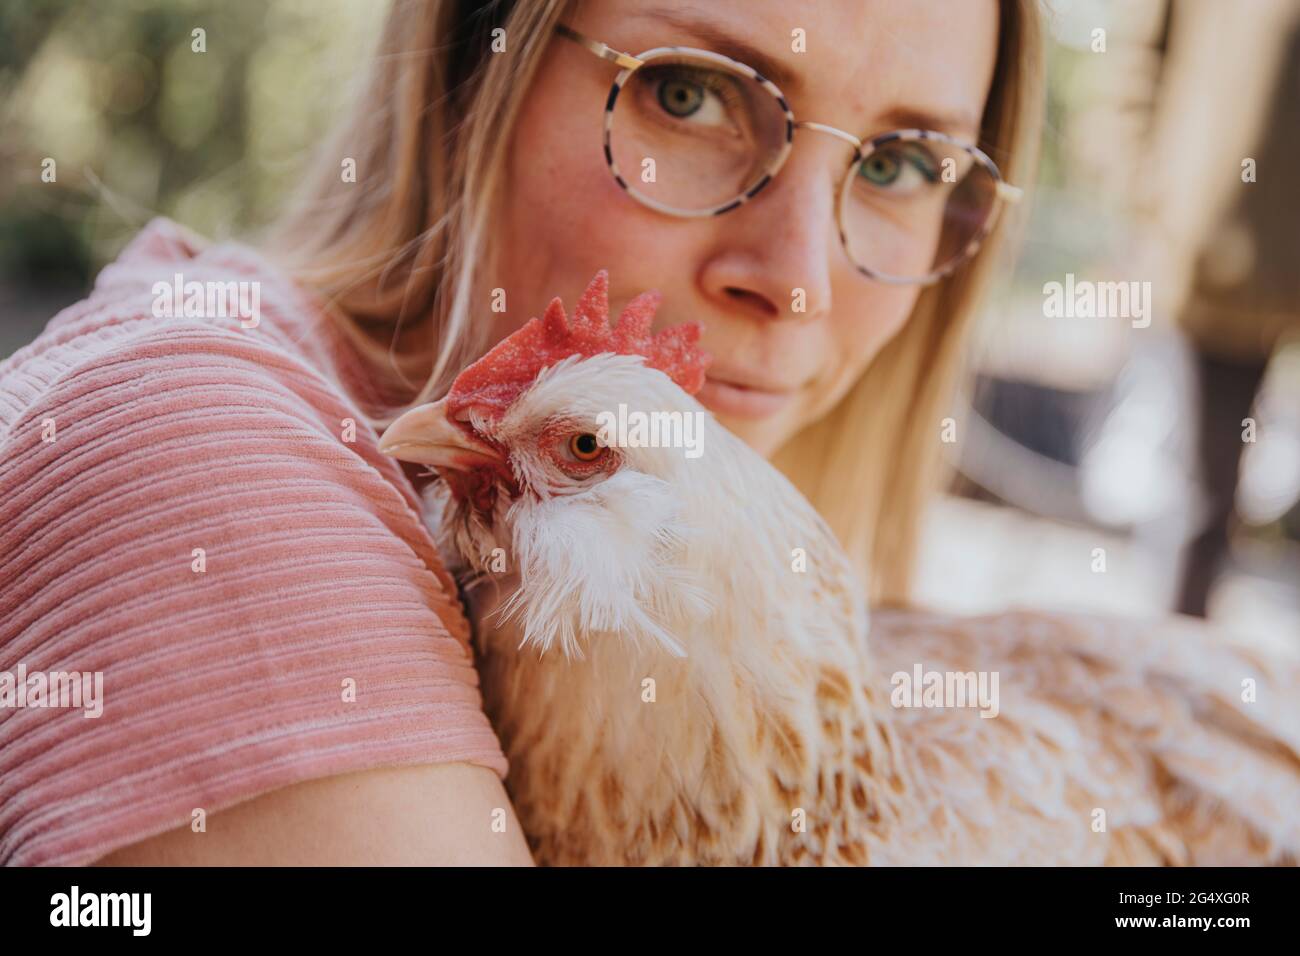 Frau mit Brille starrt, während sie Huhn umarmt Stockfotografie - Alamy